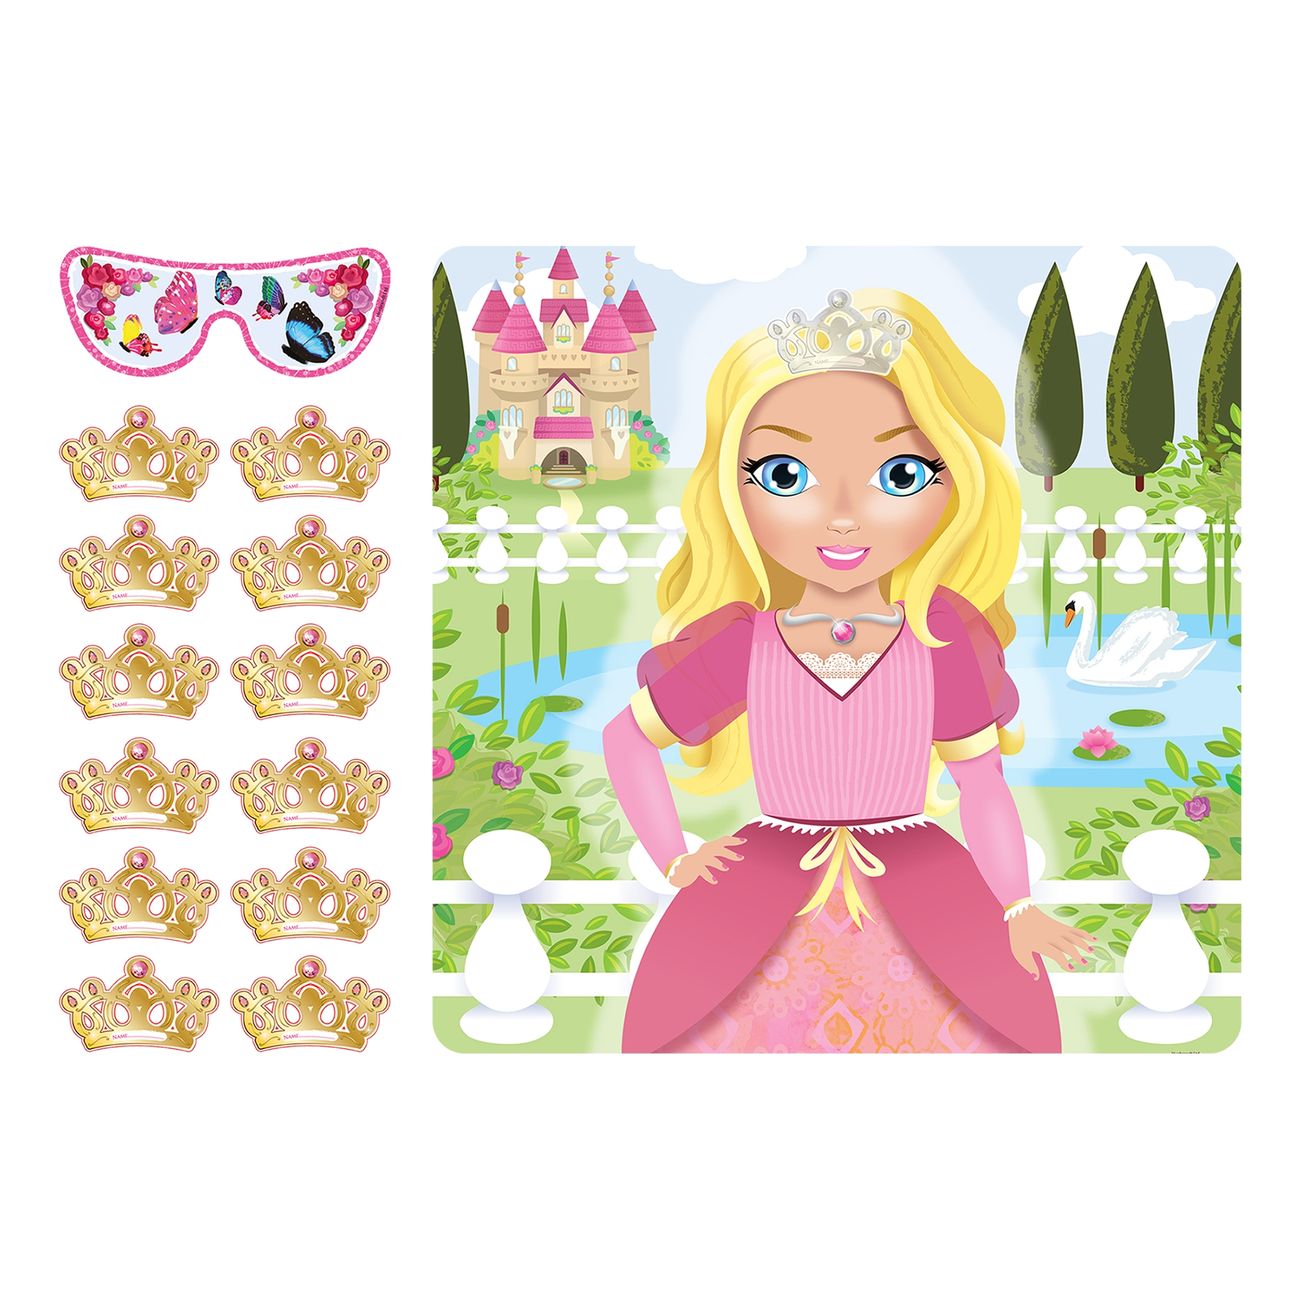 pinna-kronan-spel-prinsessa-88859-1